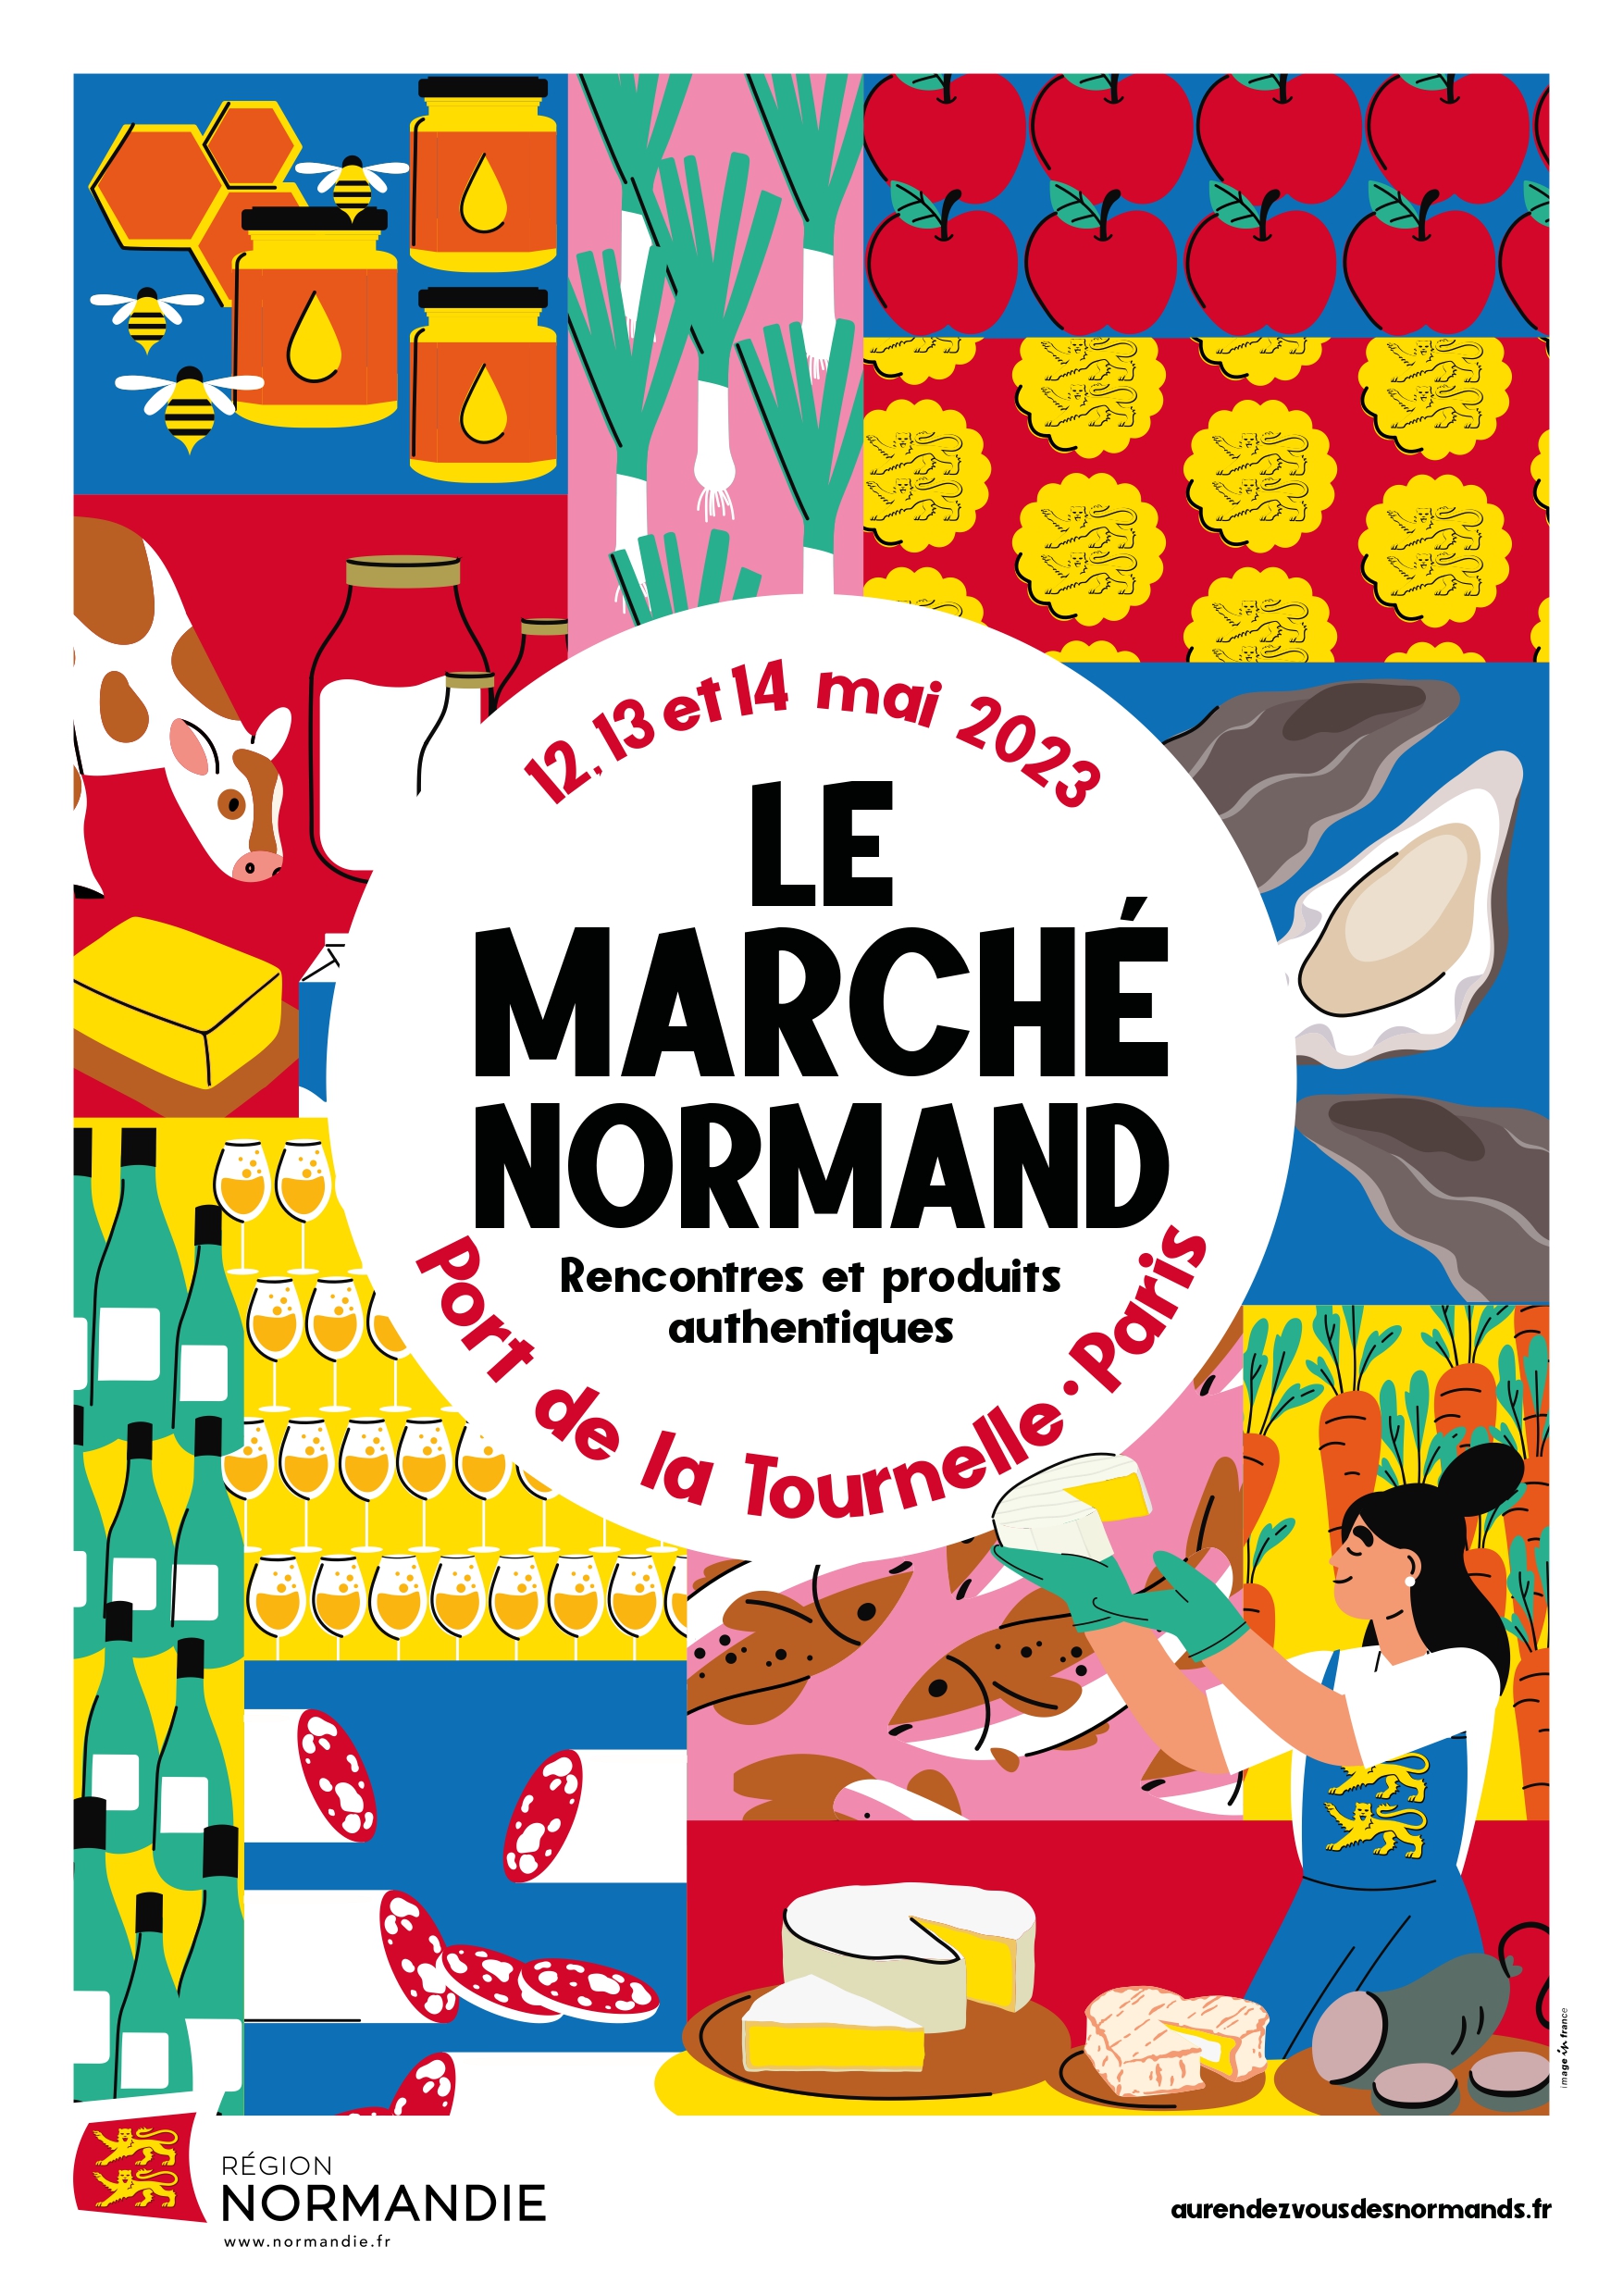 Le marché normand - Au rendez-vous des Normands